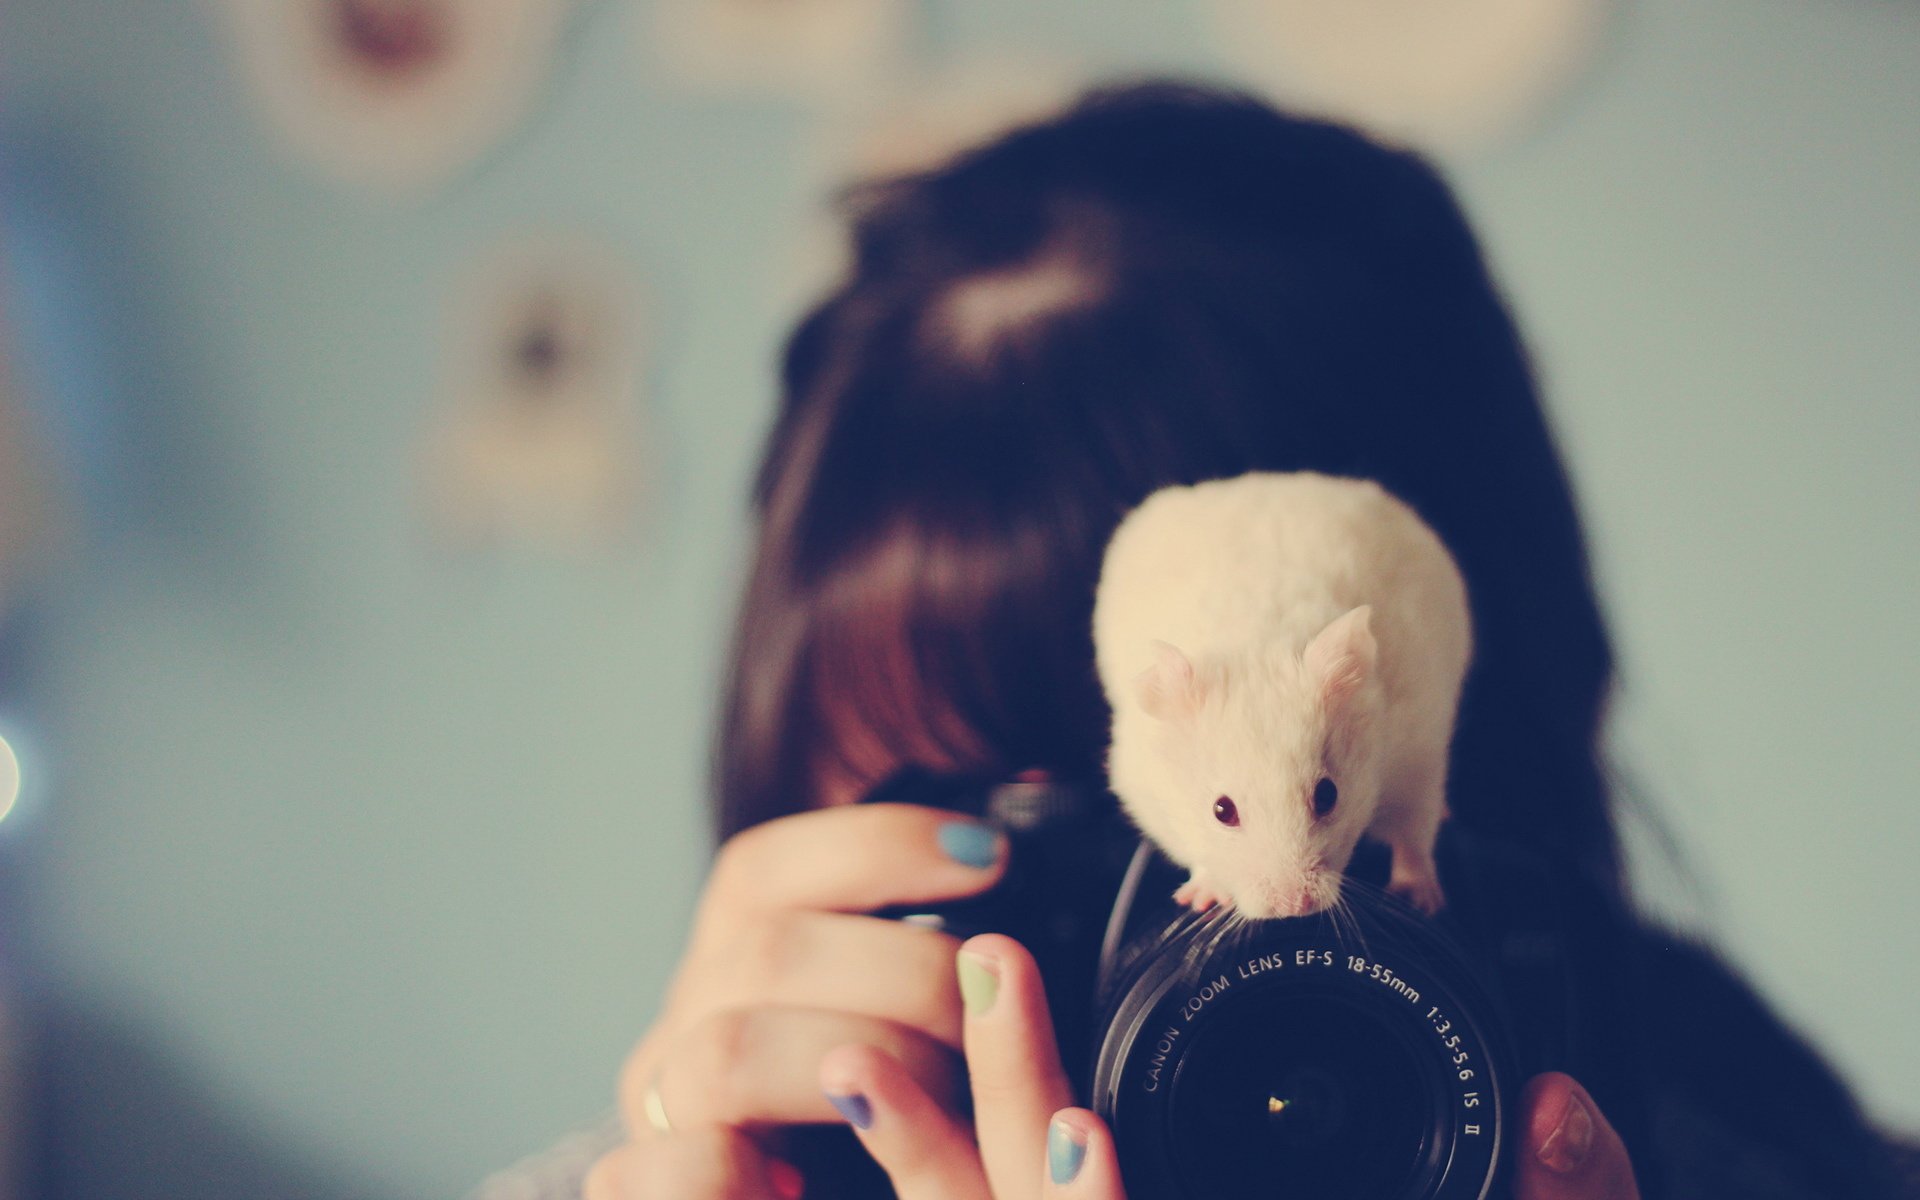 萌宠动物,卖萌图,小白鼠,相机